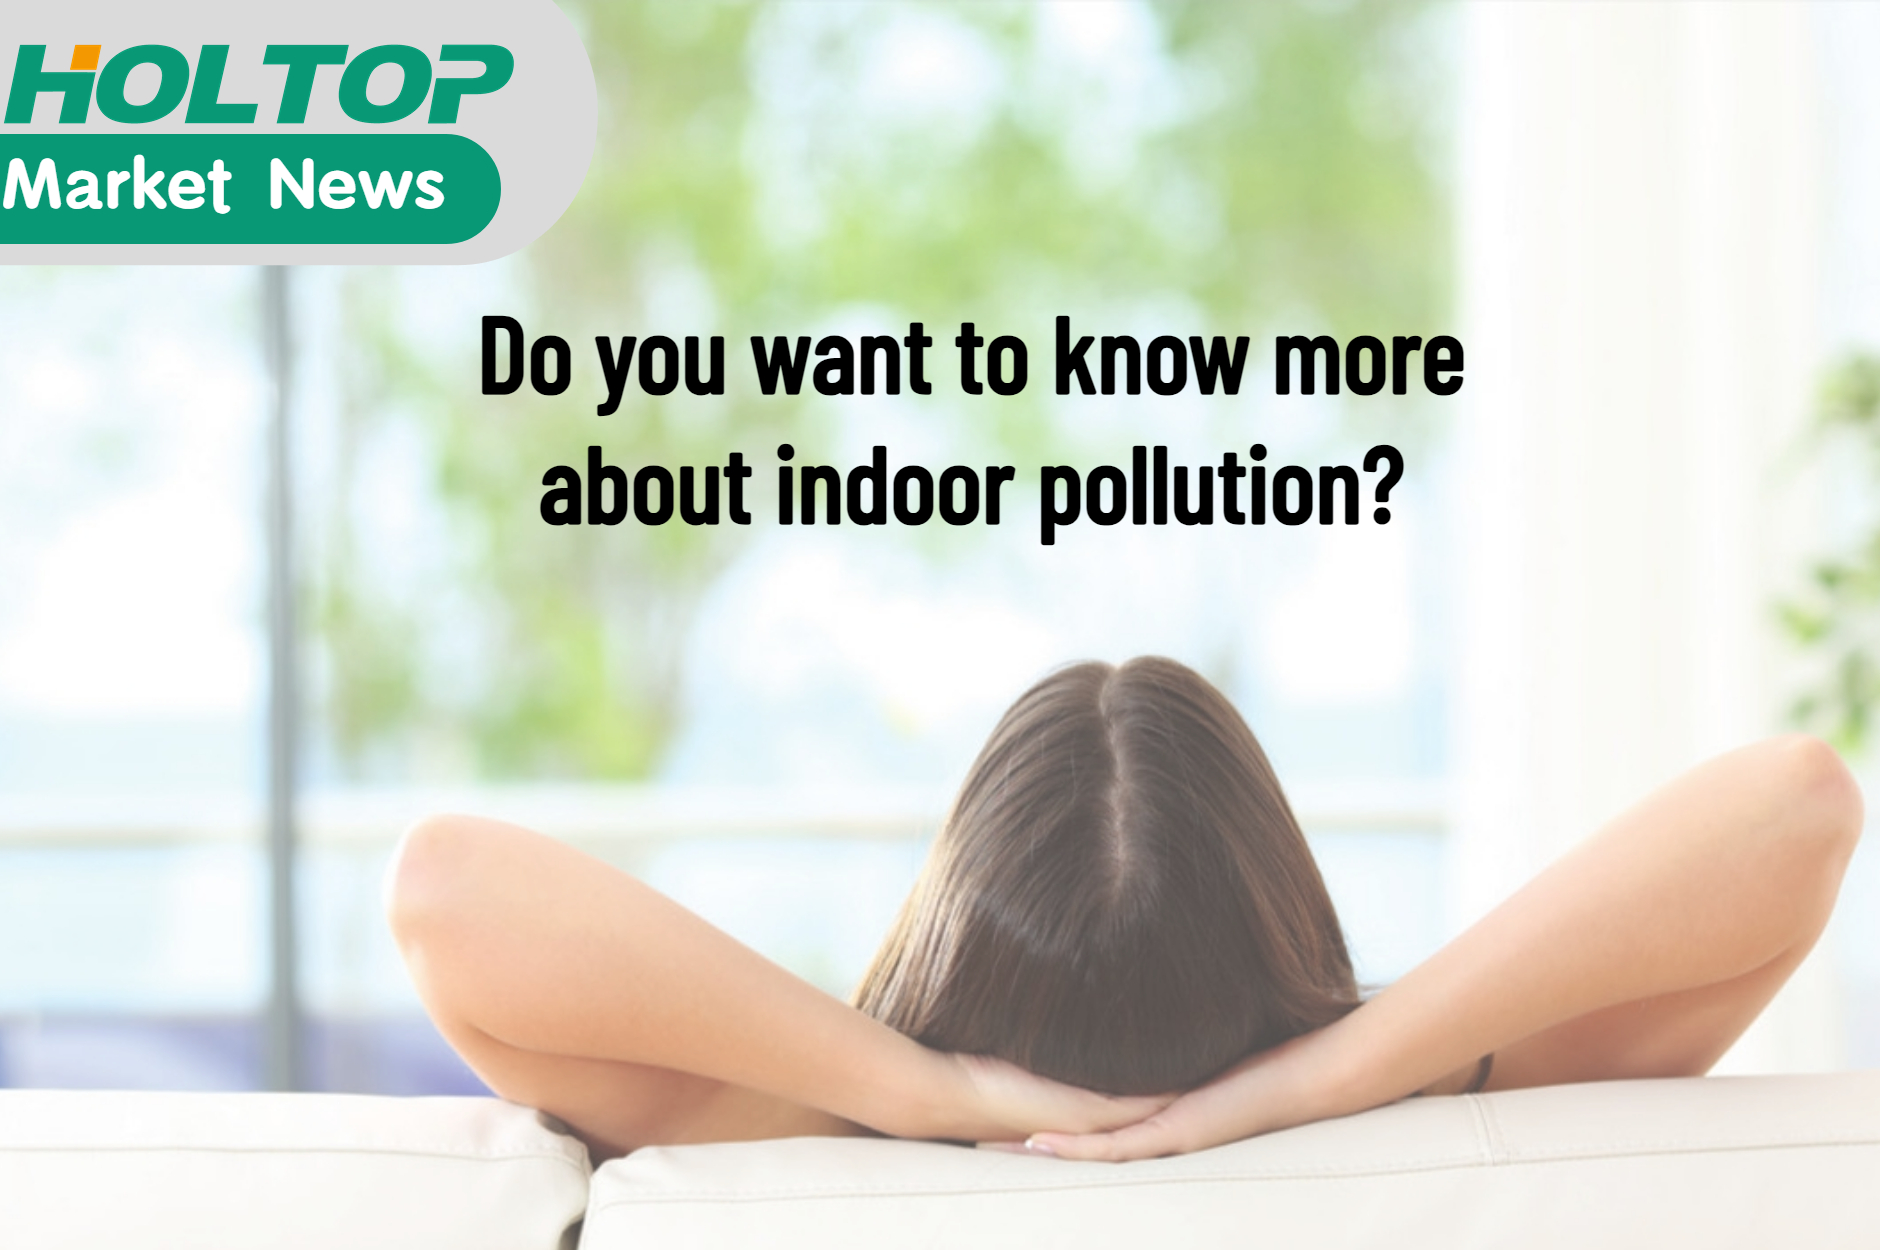 Vuoi saperne di più sull'inquinamento indoor